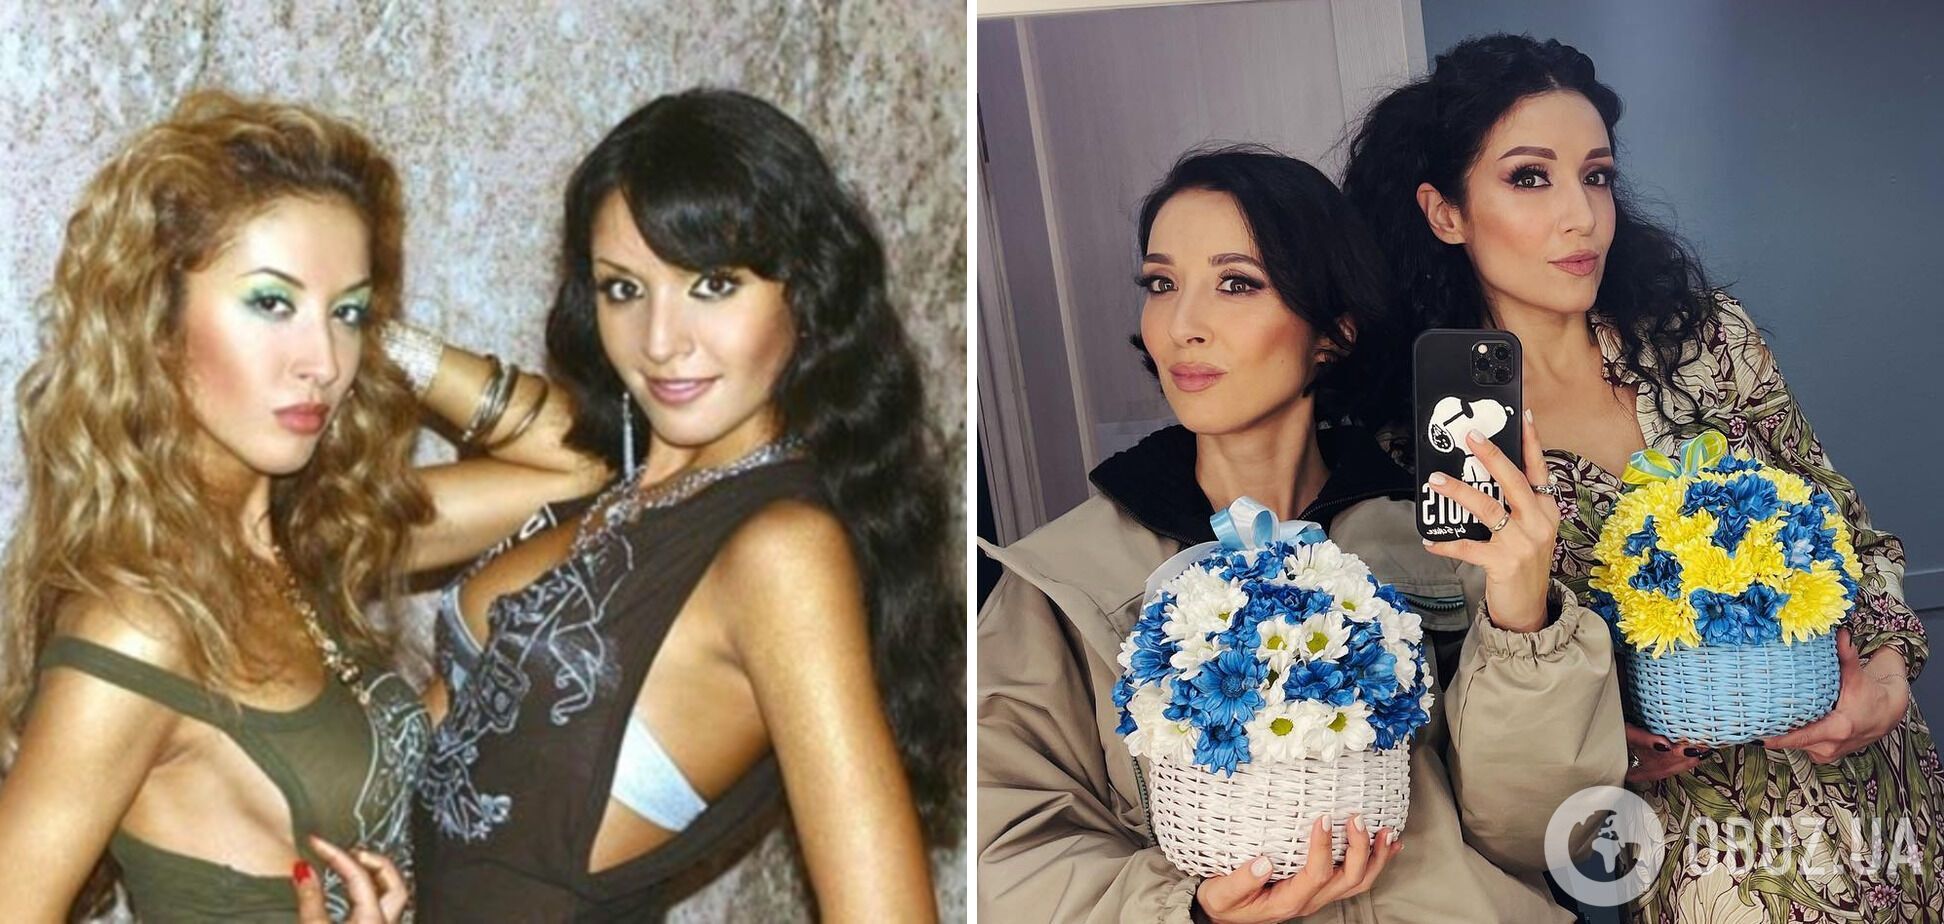 Как изменились Анна и Ангелина Завальские из группы "Алиби" за 23 года. Фото тогда и сейчас